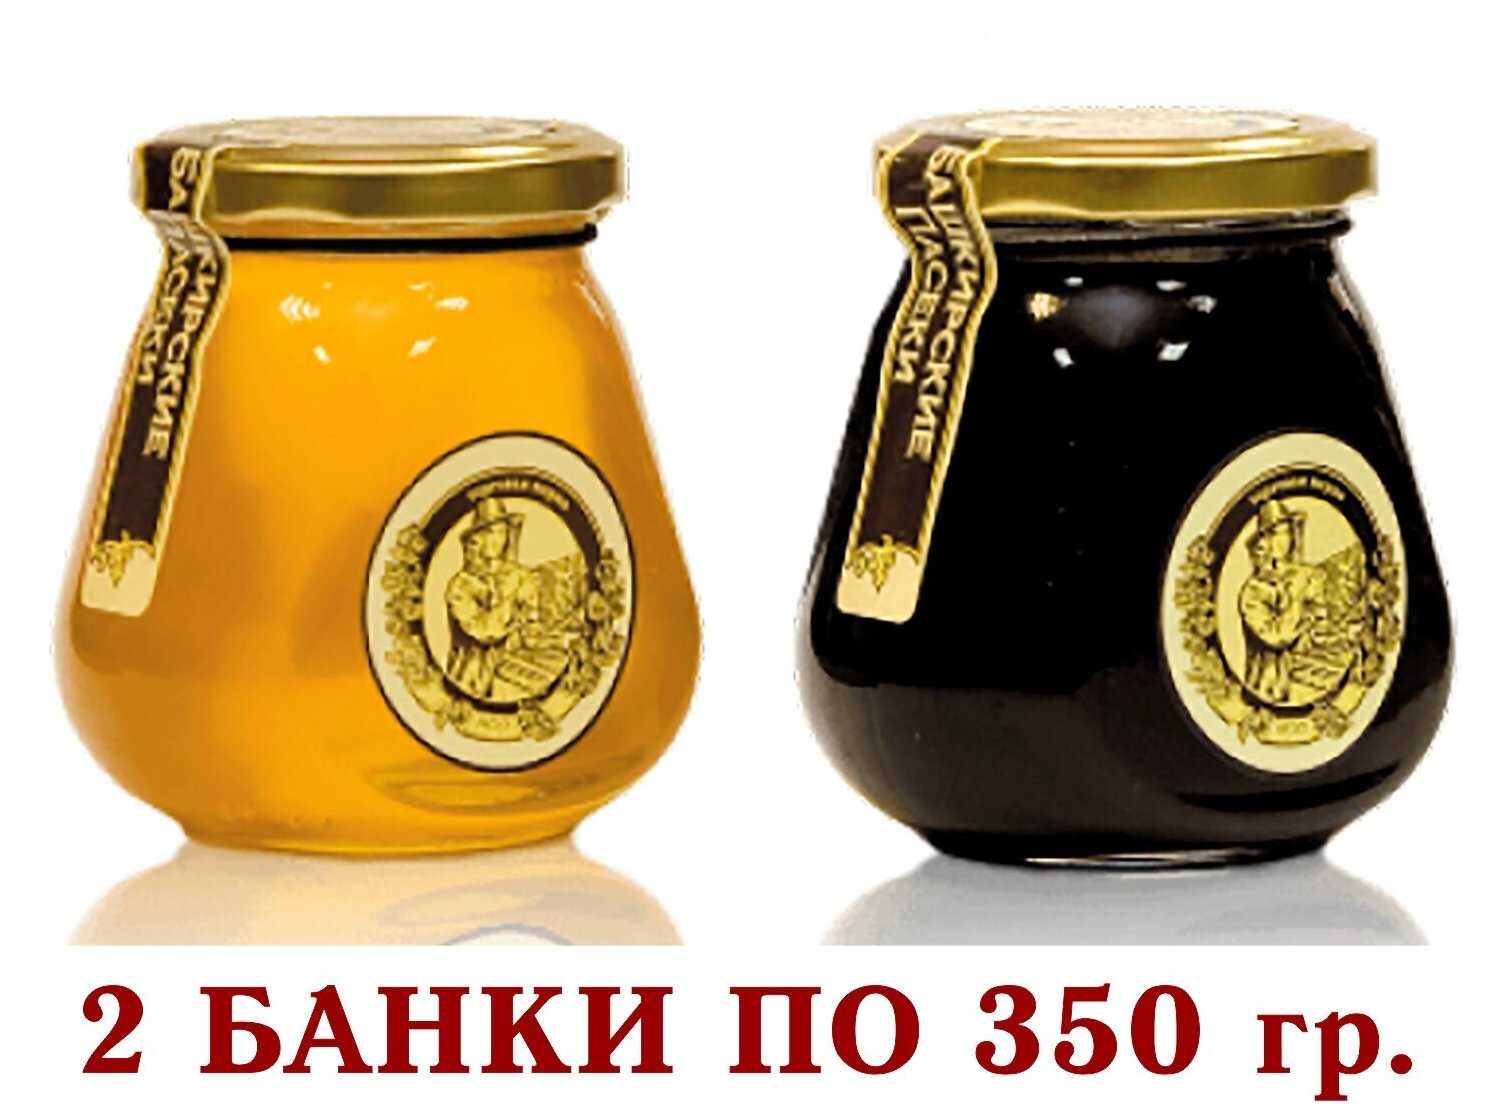 МЁД цветочный+гречишный натуральный «капля» "башкирские пасеки +" 2 * 350 гр.